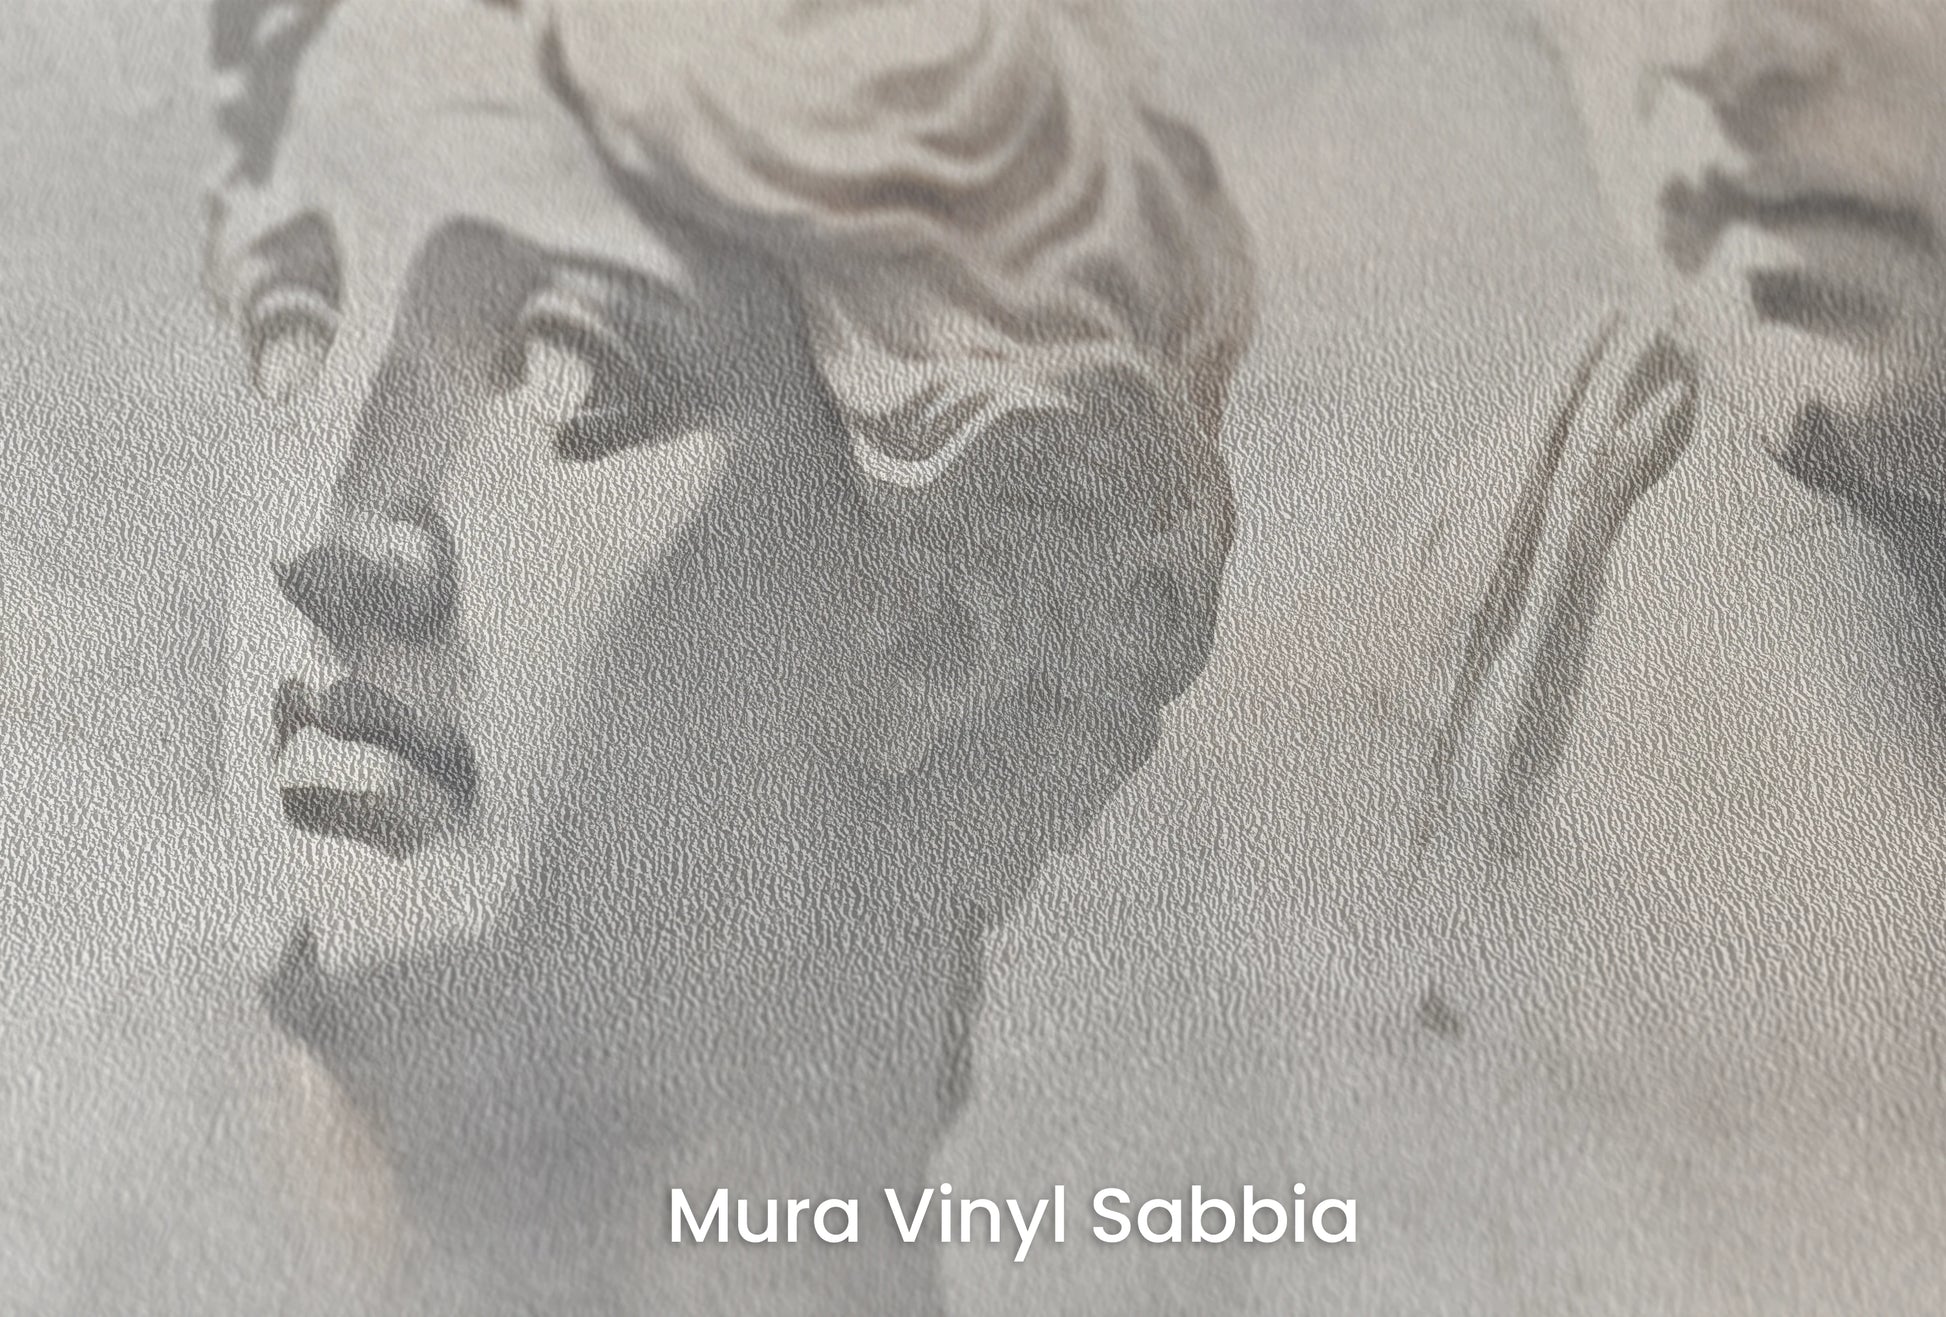 Zbliżenie na artystyczną fototapetę o nazwie Apollo and Daphne na podłożu Mura Vinyl Sabbia struktura grubego ziarna piasku.